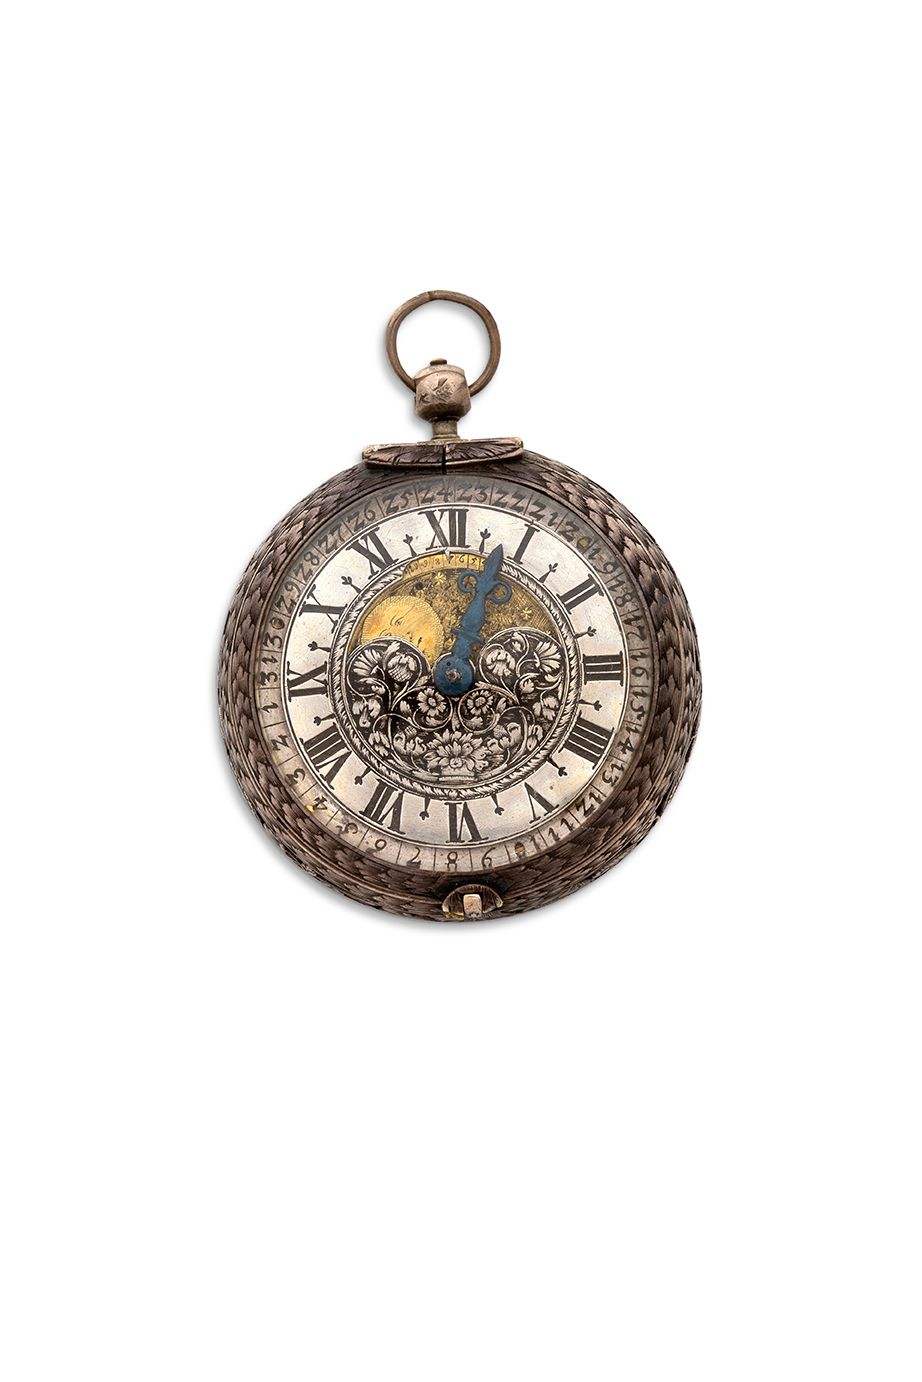 Chgs, Jn NURNBERG 
Reloj de plata con una sola aguja, fecha y fases lunares



C&hellip;